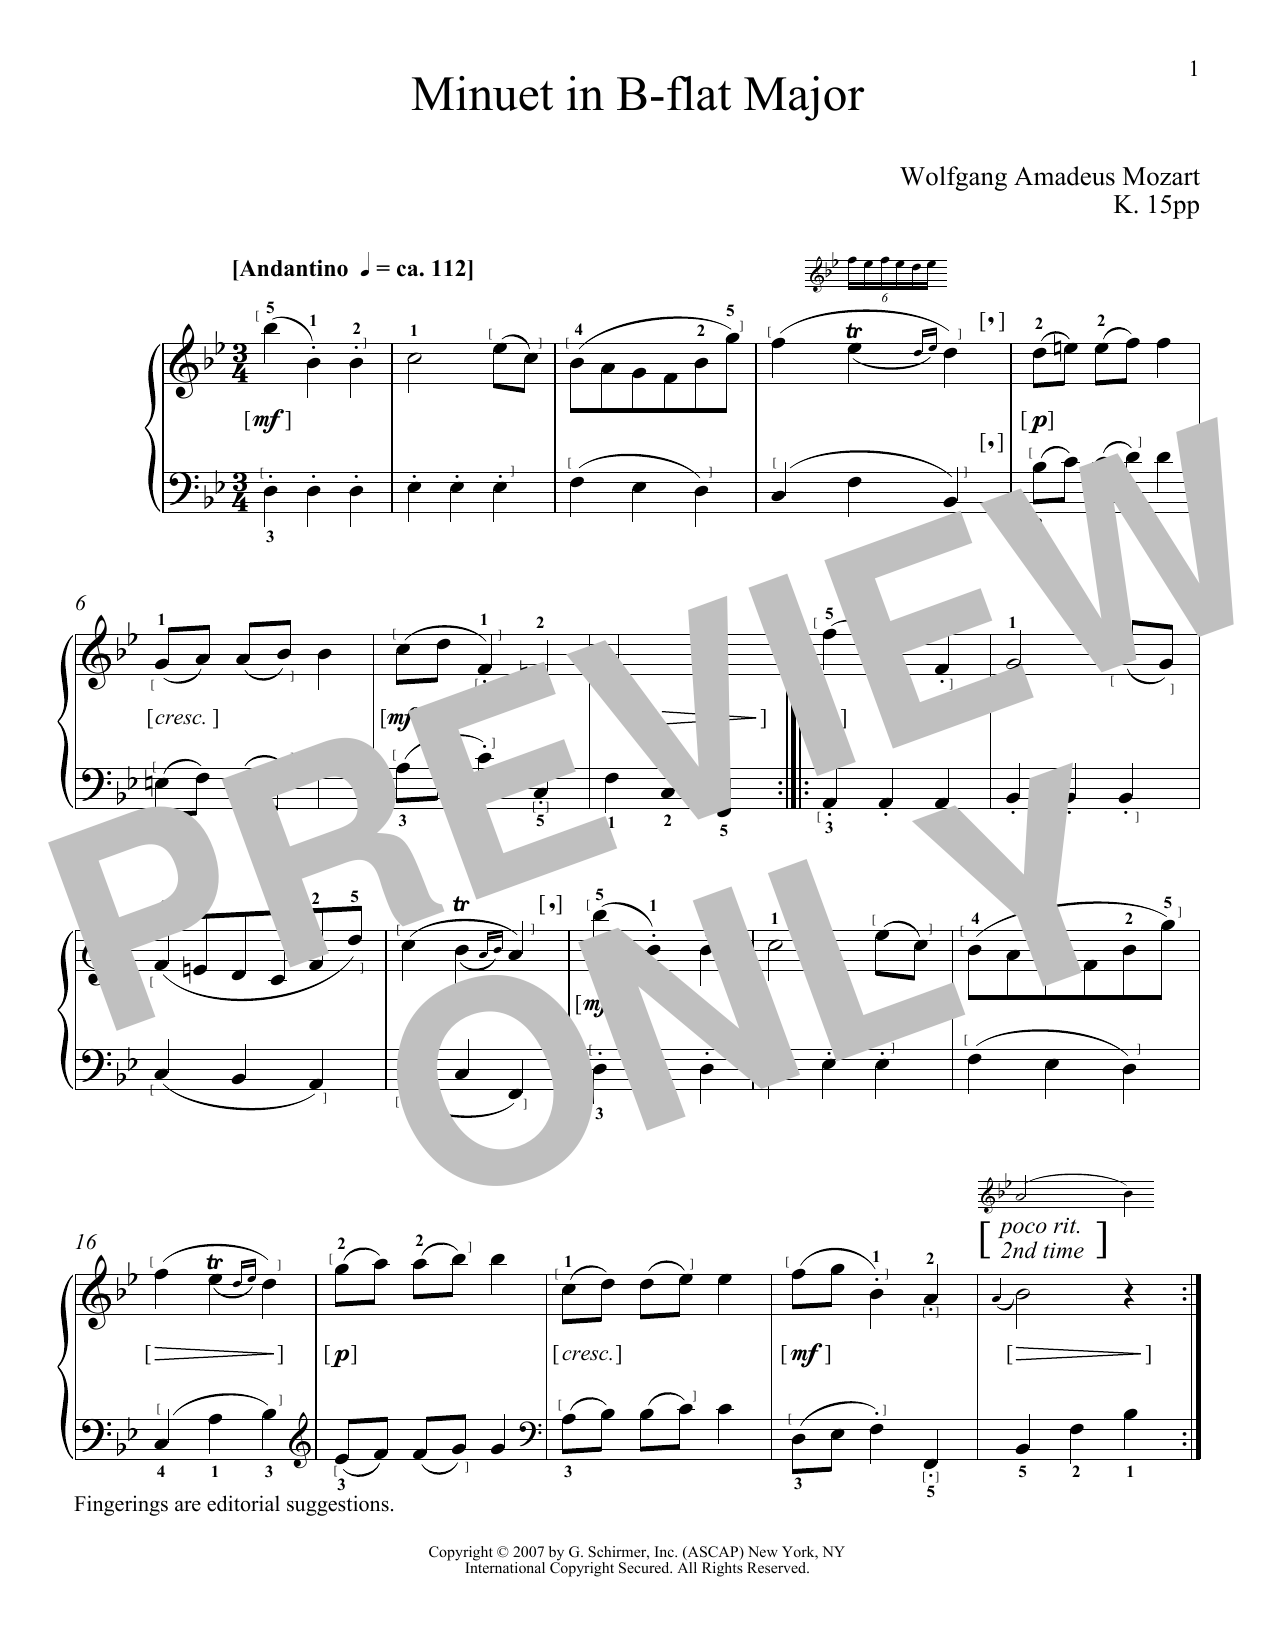 Download Wolfgang Amadeus Mozart Minuet In B-Flat Major, KV 15pp Sheet Music